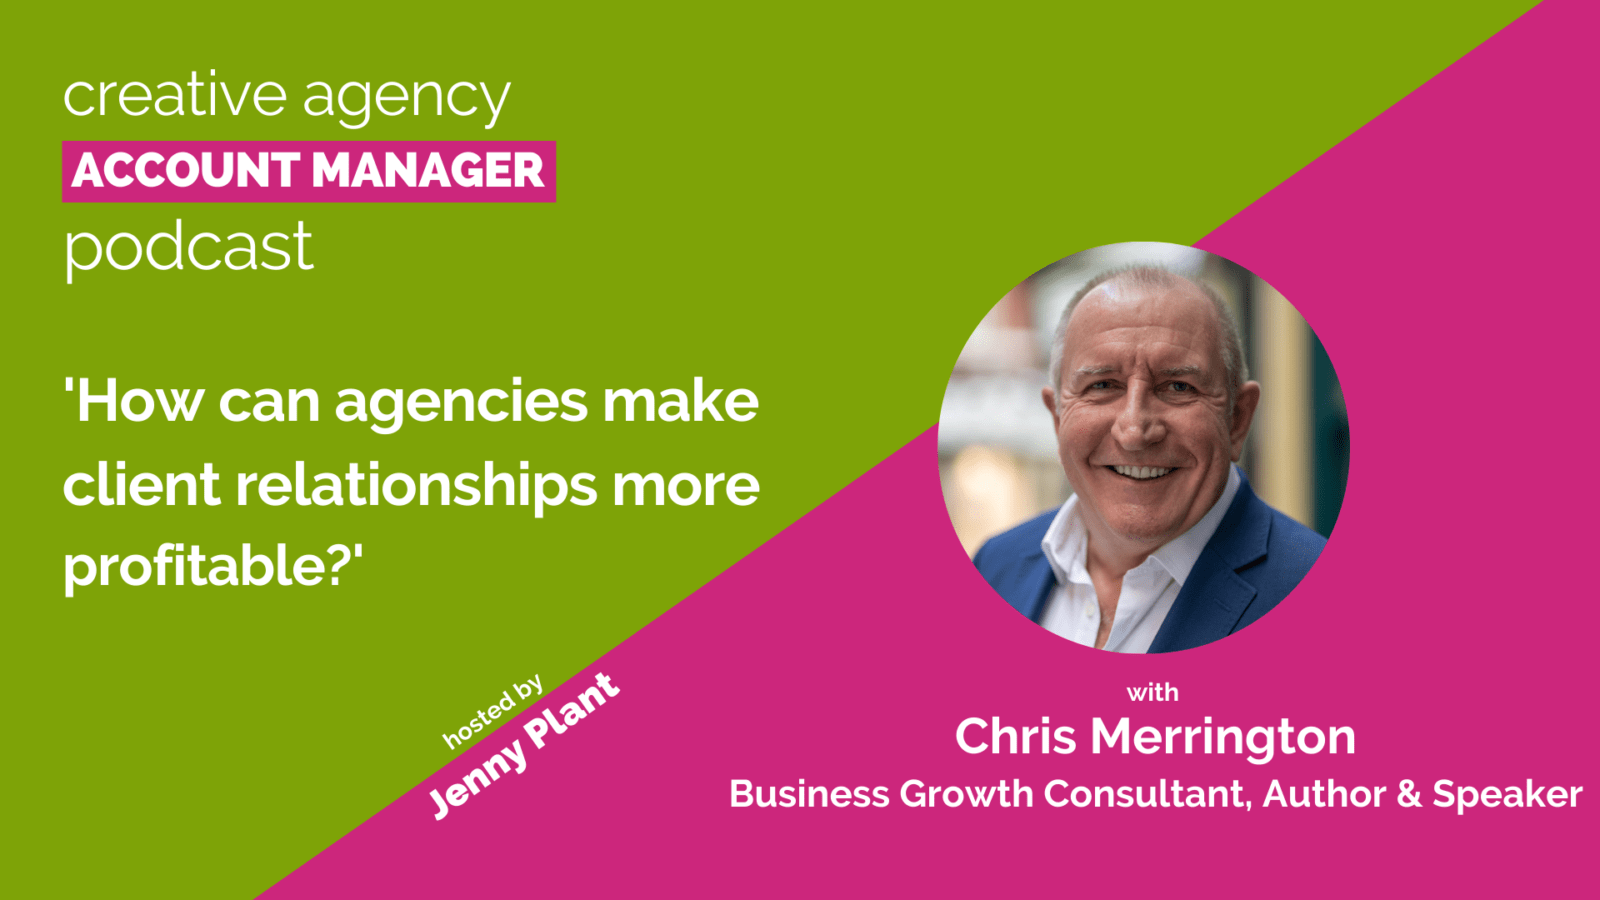 Chris Merrington profitable client relationships